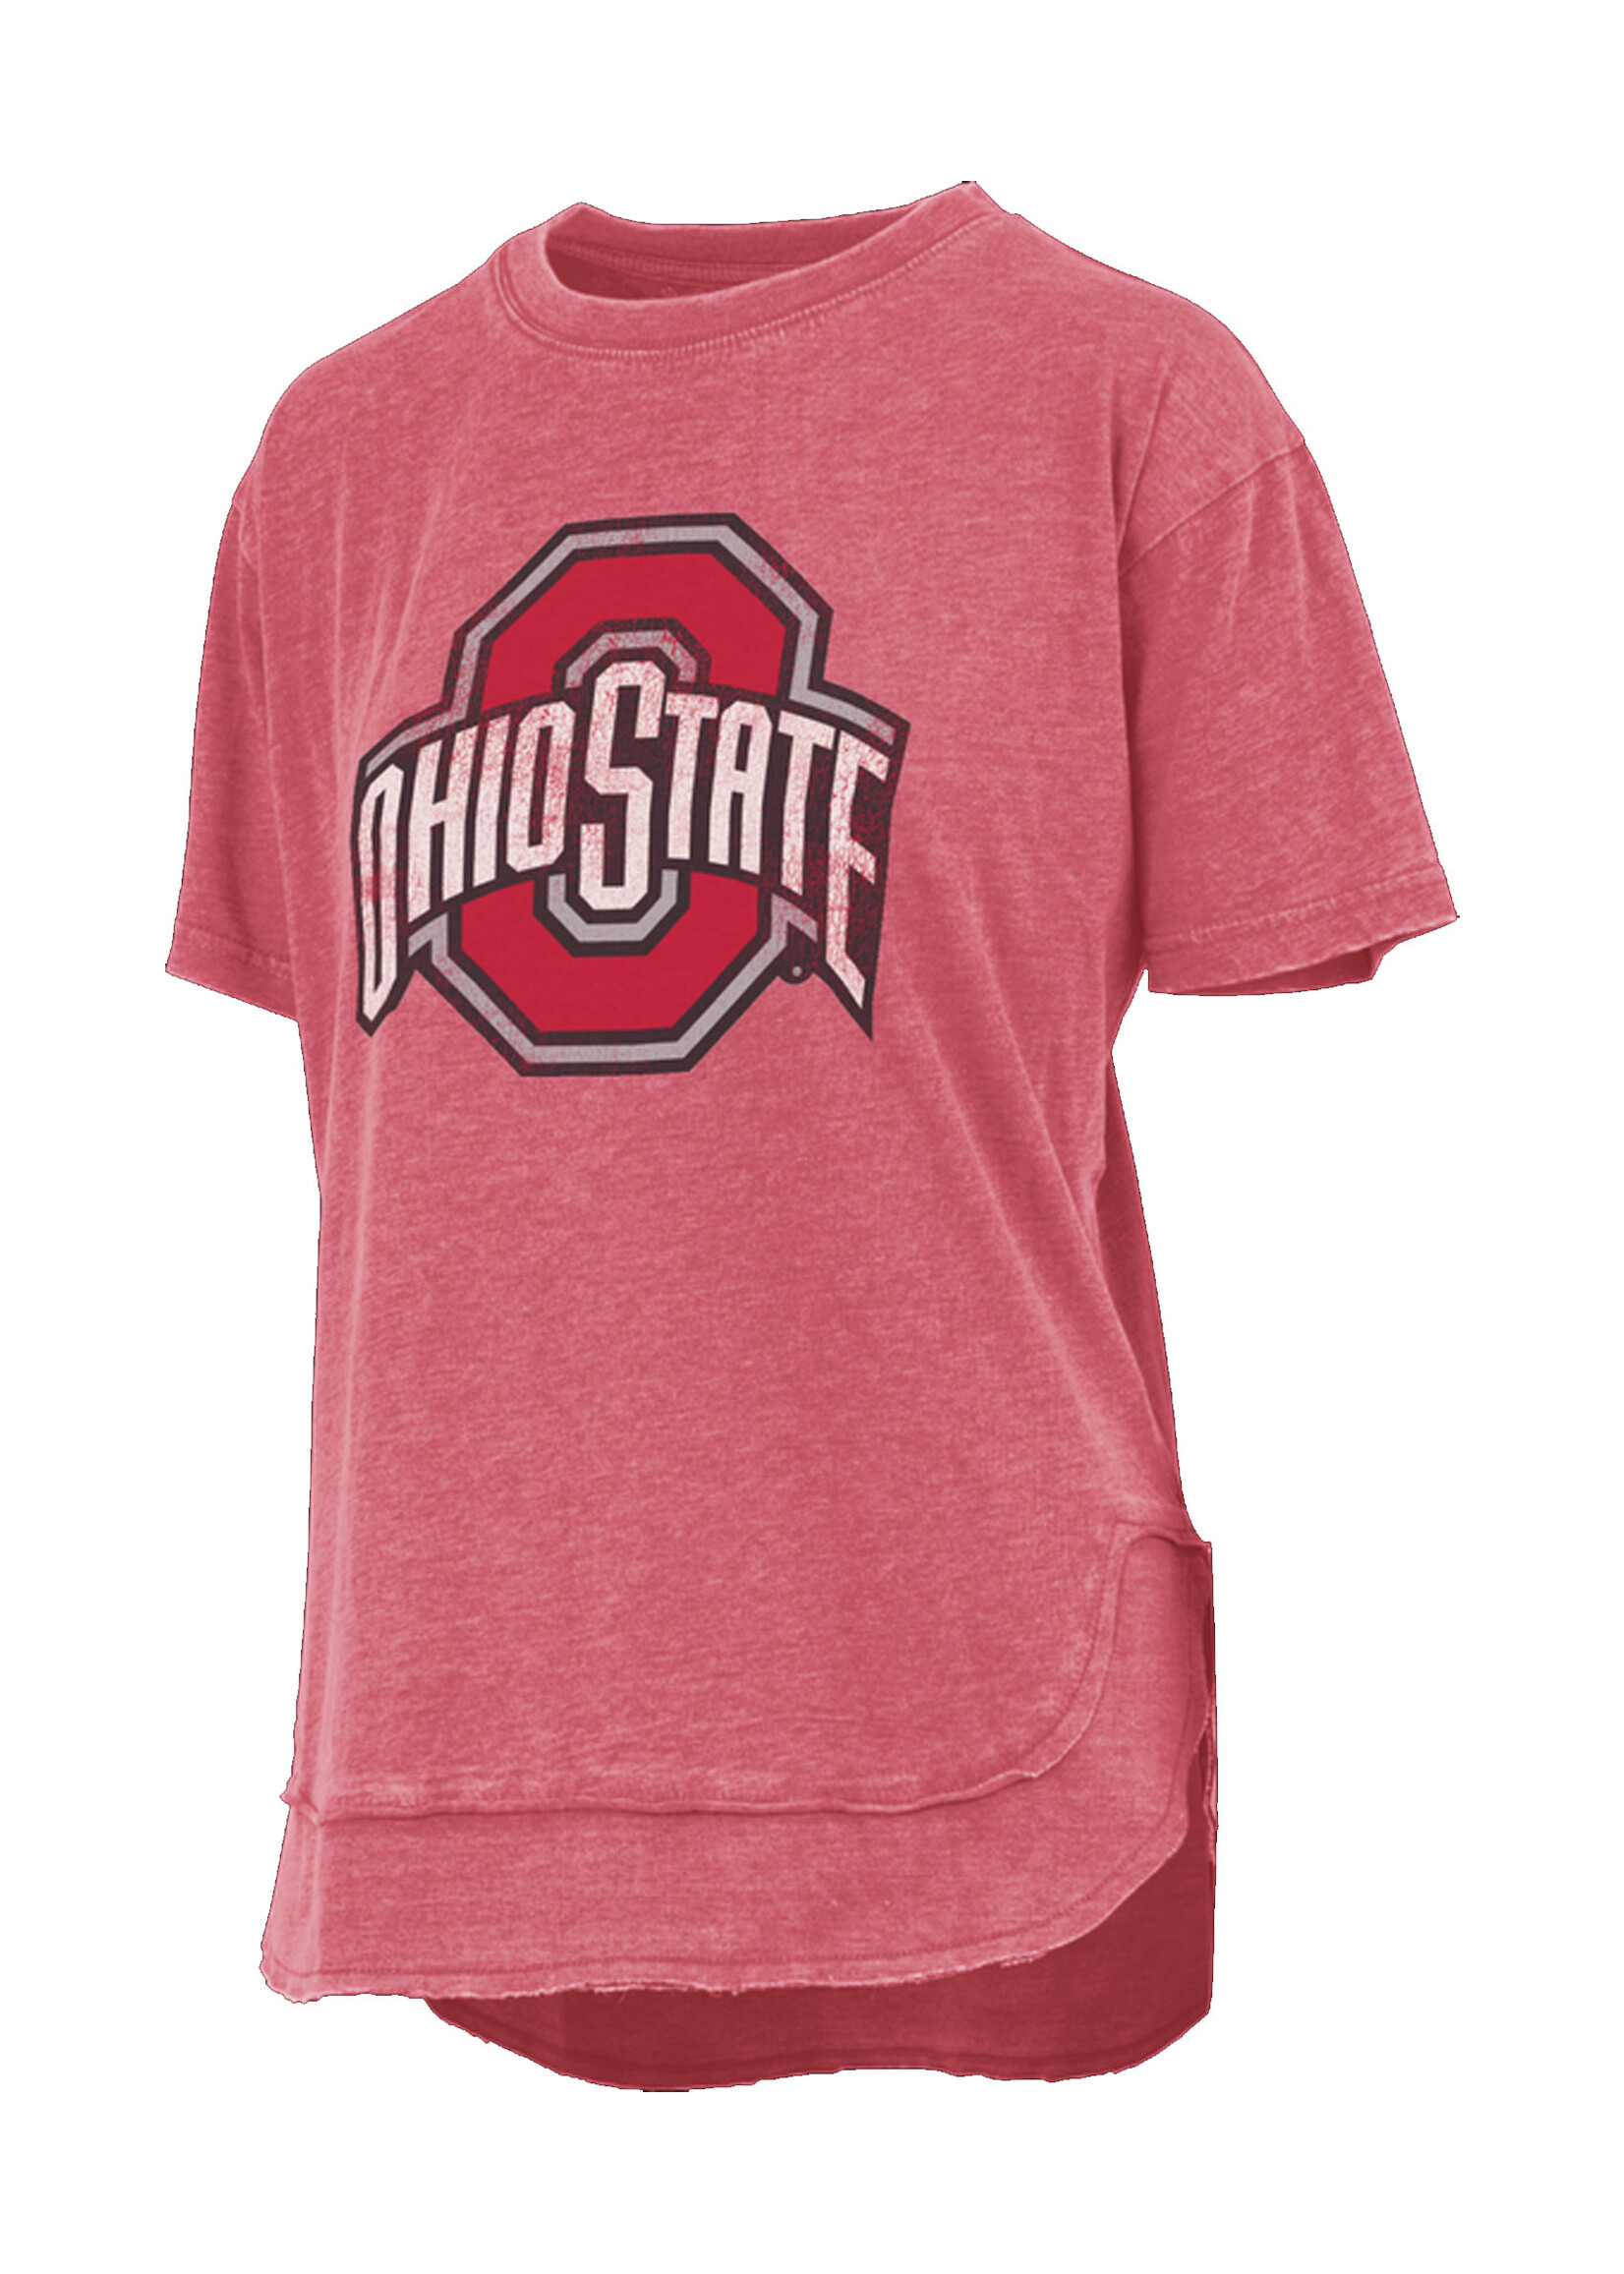 PRESSBOX Ohio State Buckeyes Women's Poncho T-Shirt